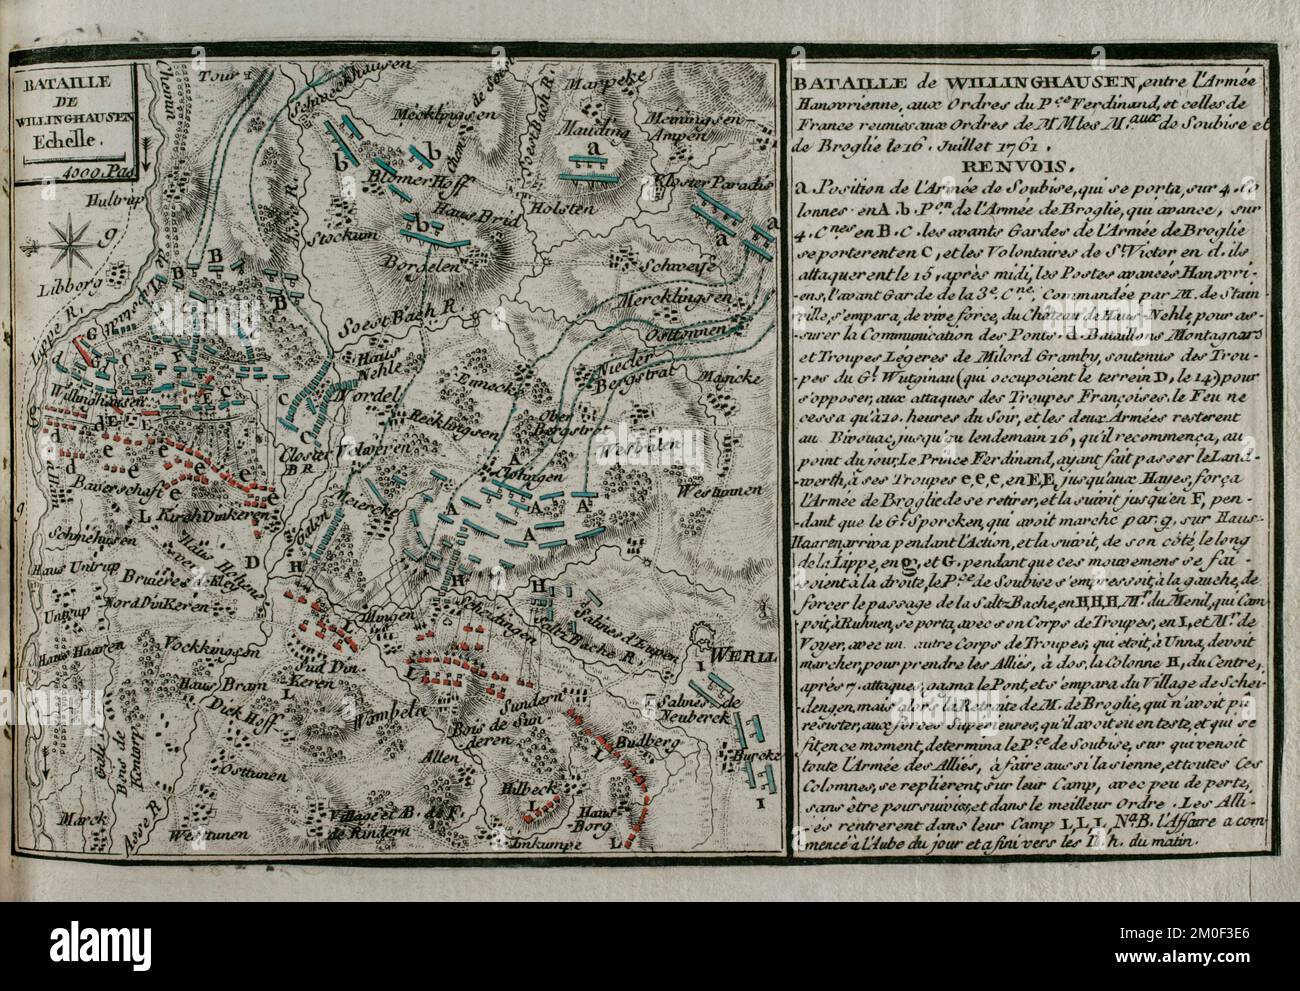 Guerra de los Siete Años (1756-1763). Mapa de la Batalla de Vellinghausen (15 al 16 de julio de 1761). Tuvo lugar a orillas del río Lippe, en el noroeste de Alemania. Confrontado el ejército aliado prusiano-hanoveriano-británico dirigido por el príncipe Fernando de Brunswick contra el ejército francés bajo el mando del duque de Broglie y el príncipe Soubise. La fuerza francesa tuvo que retirarse. Publicado en 1765 por el cartógrafo Jean de Beaurain (1696-1771) como ilustración de su Gran Mapa de Alemania, con los acontecimientos que tuvieron lugar durante la Guerra de los Siete Años. Ejército aliado en rojo y el ejército francés en azul. Grabado y. Foto de stock